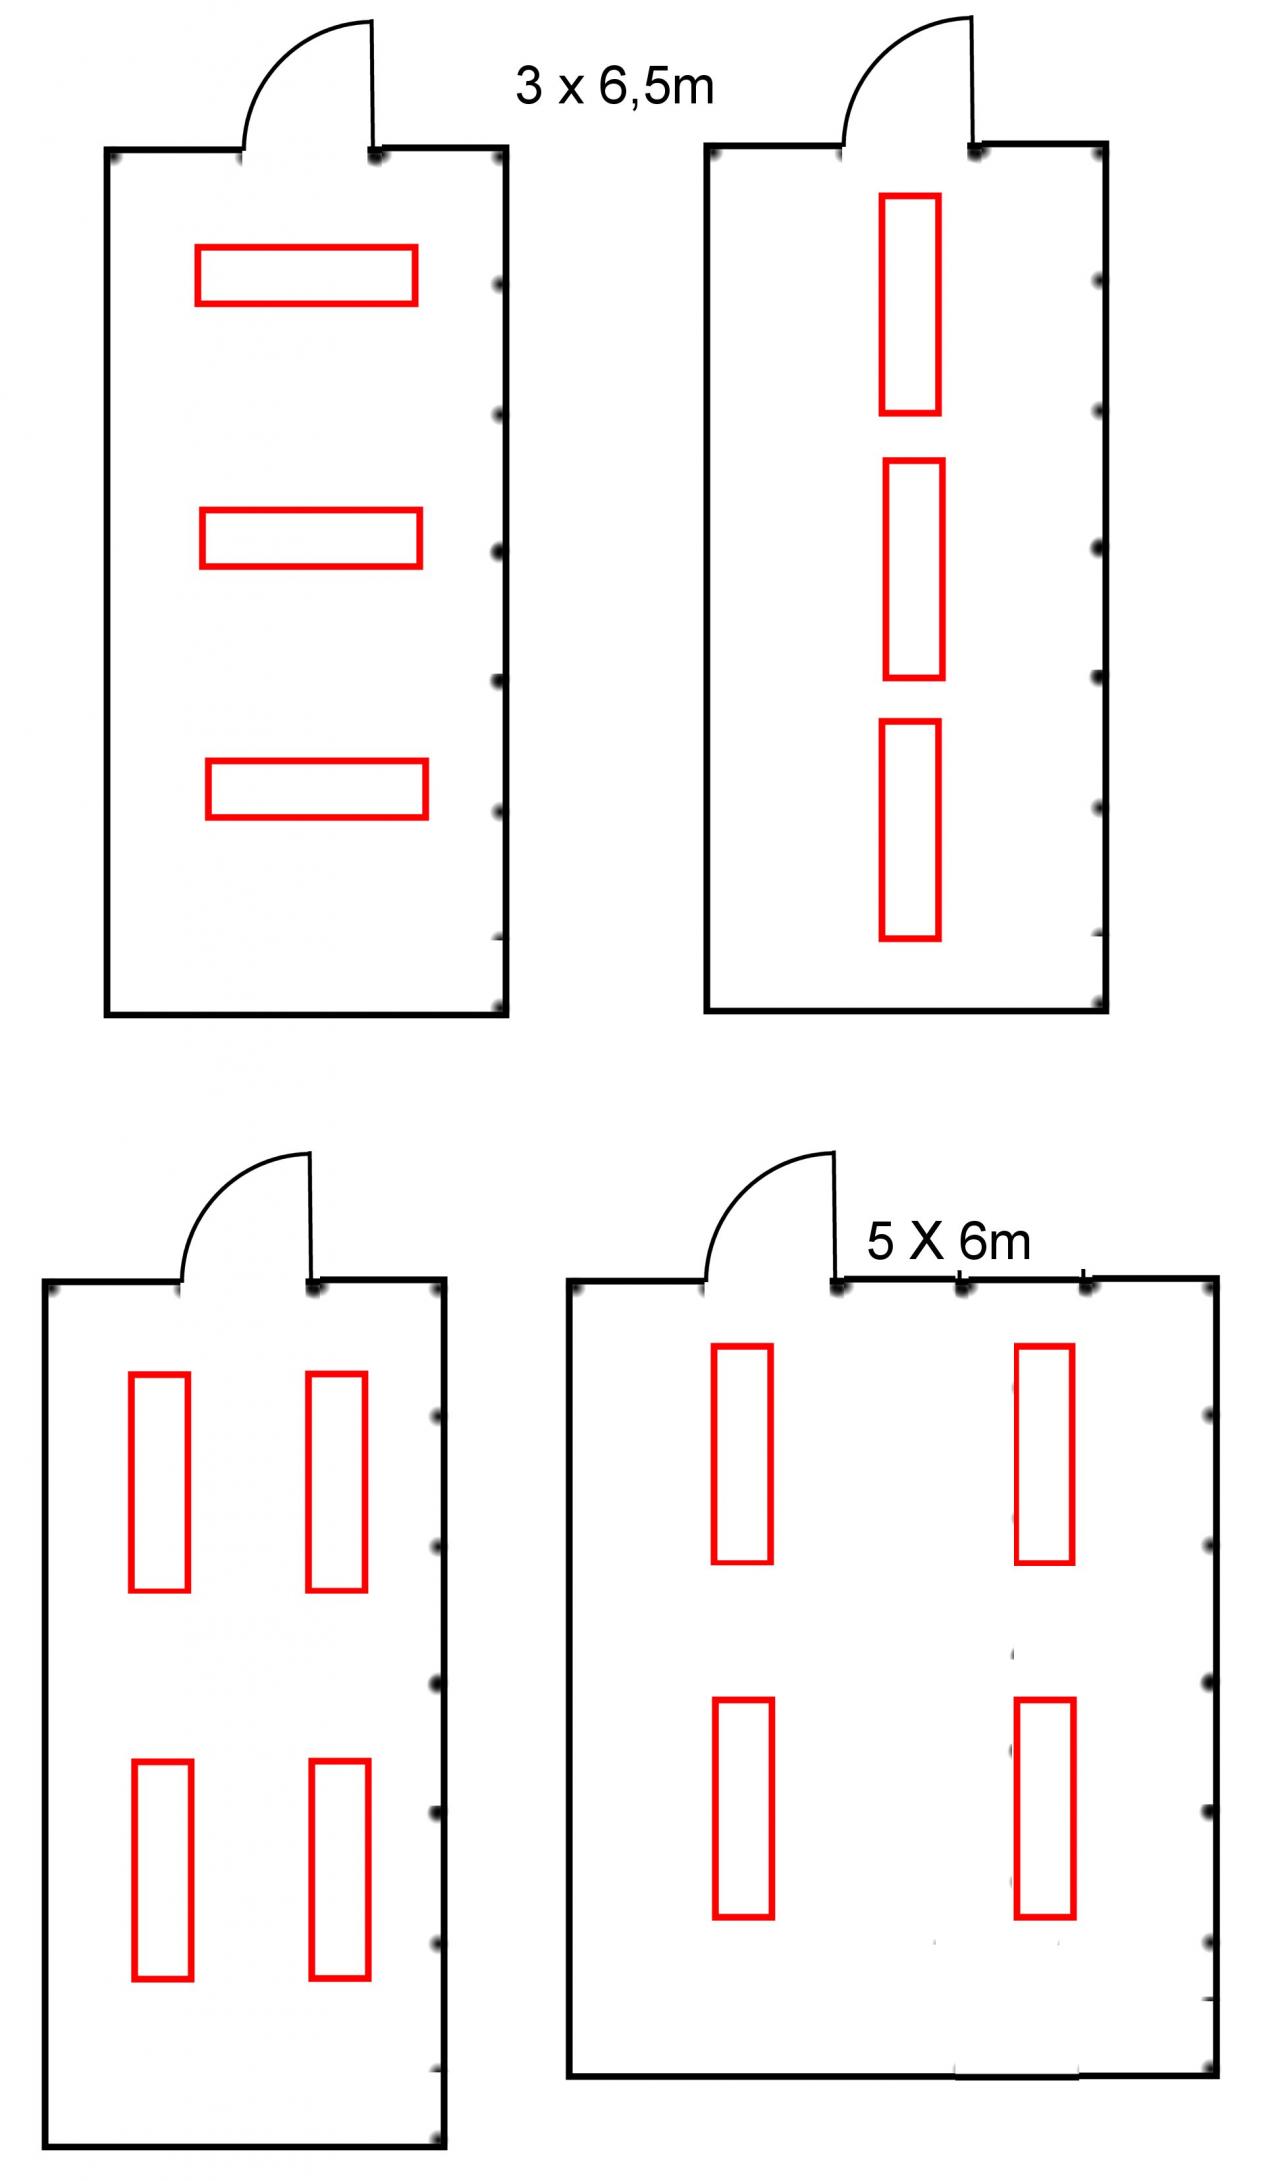 Kuva, jossa on neljä eri pohjaratkaisua, joilla valaisimet voidaan sijoittaa huoneeseen. 